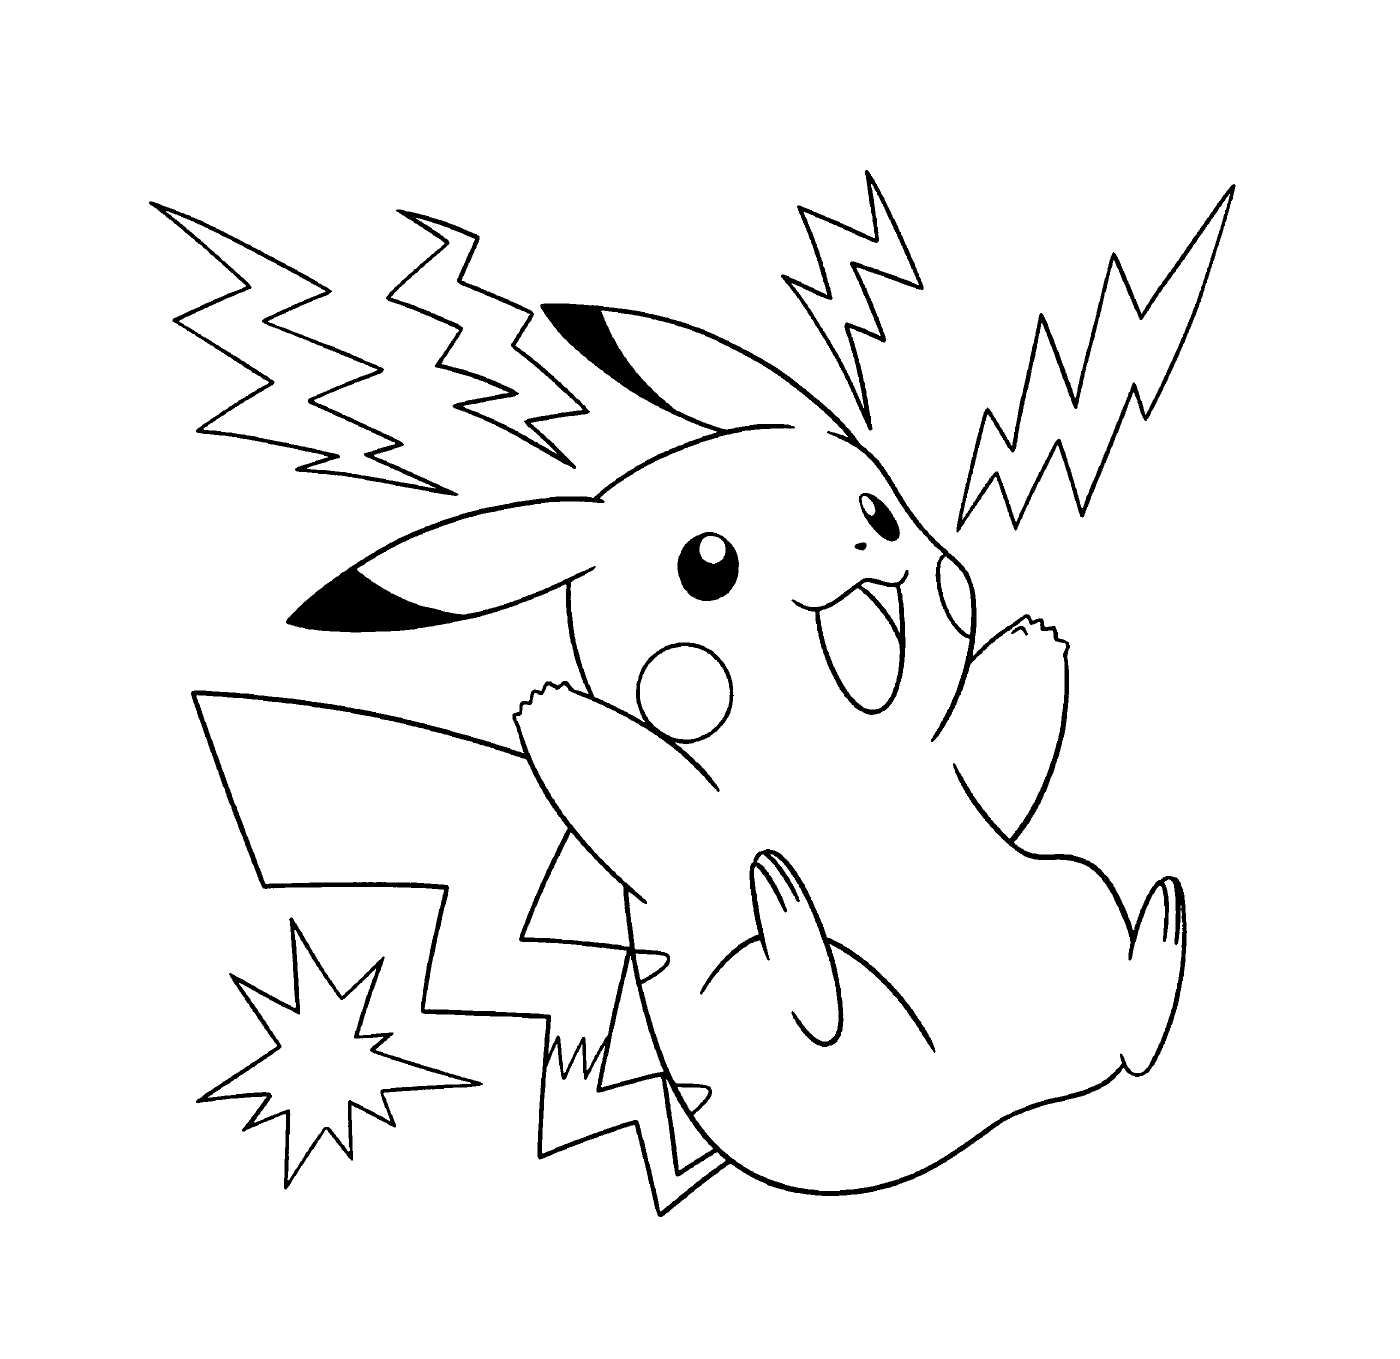  Pikachu, eléctrico y energético 